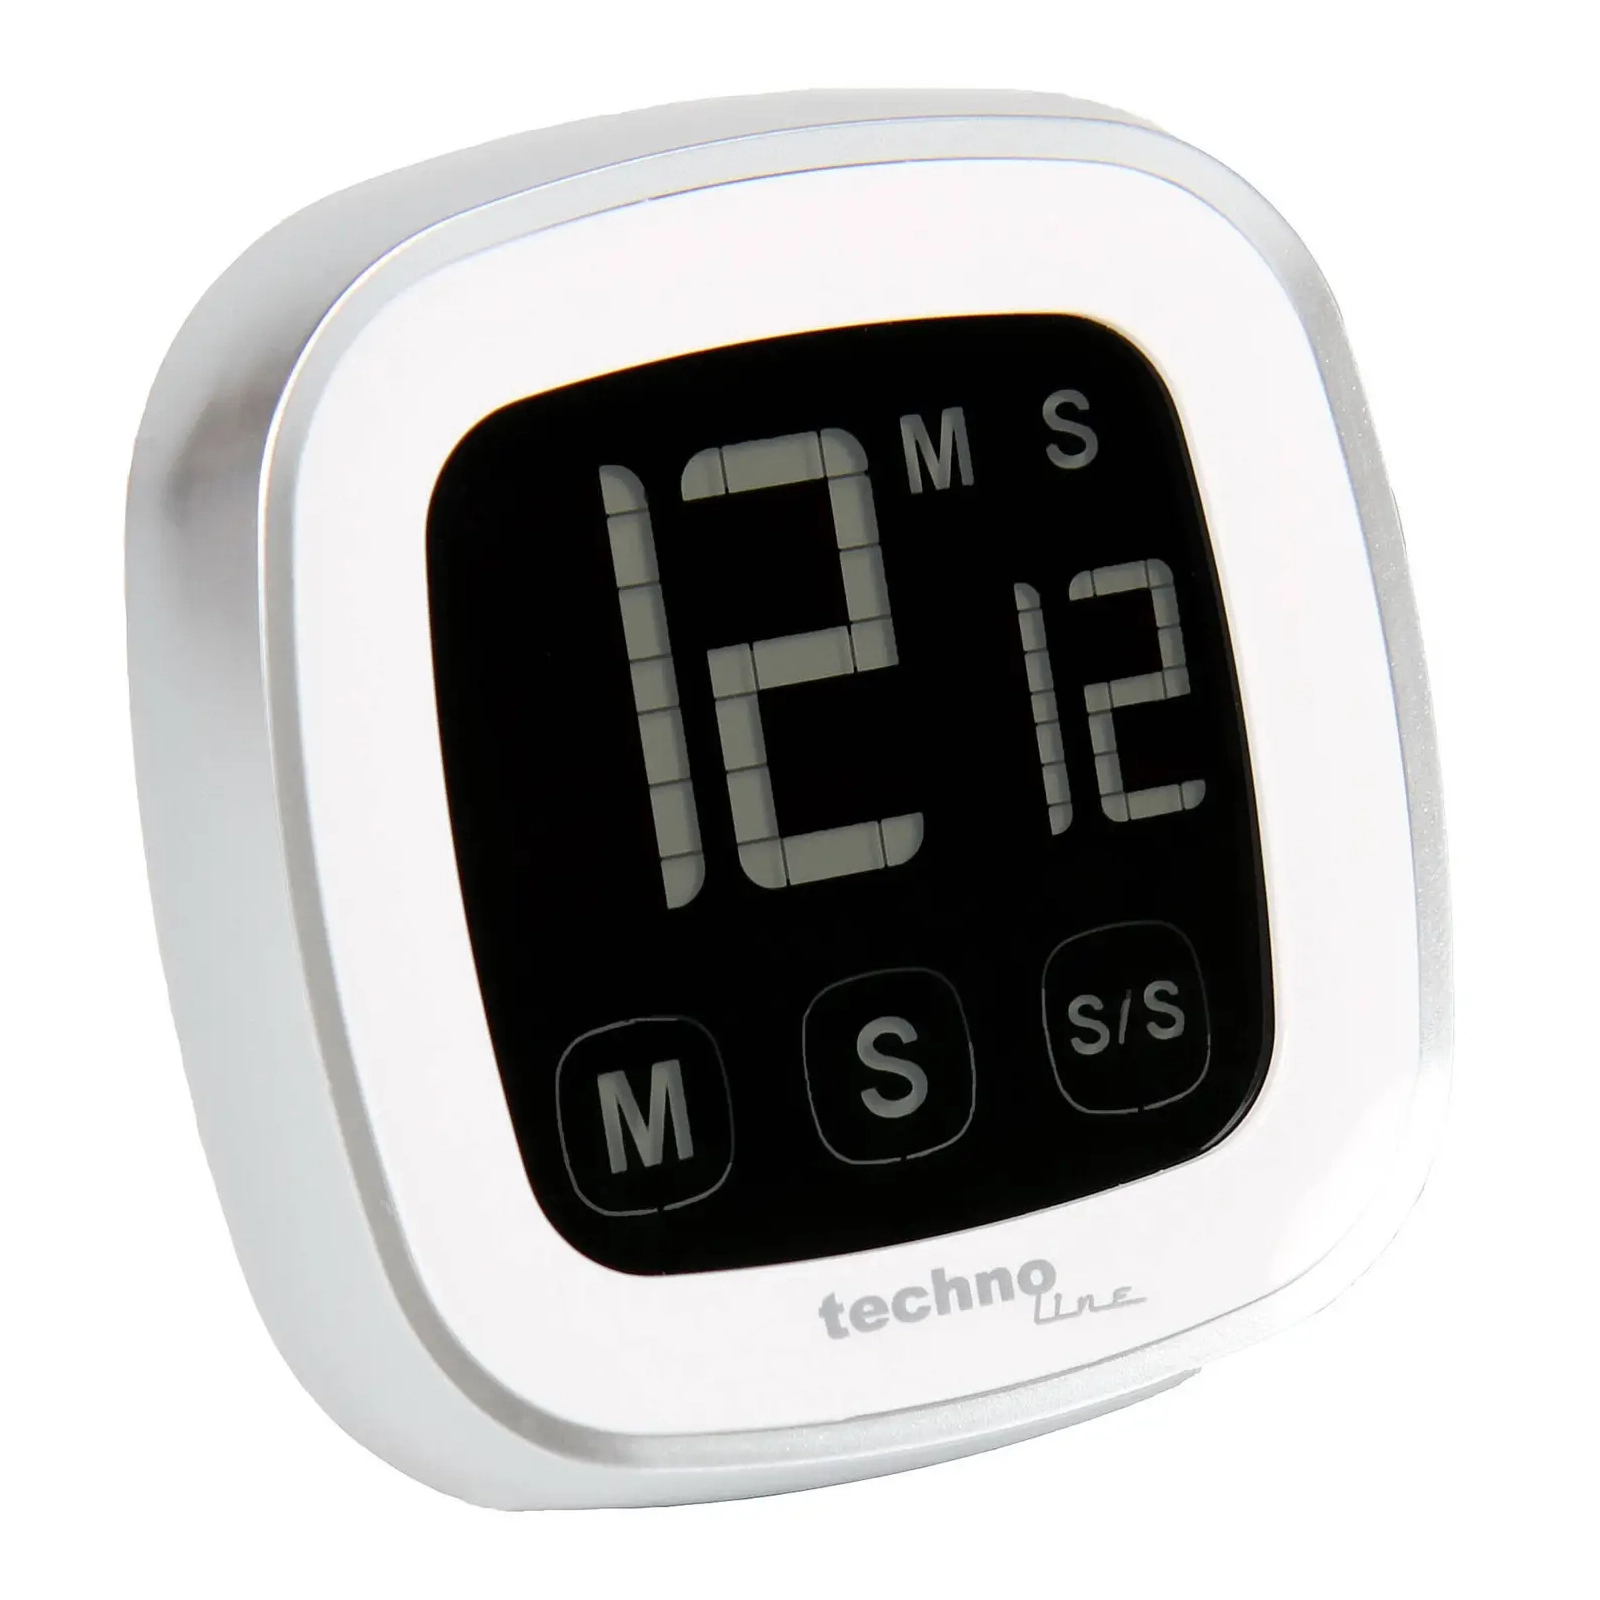 Таймер кухонный Technoline KT400 Magnetic Touchscreen White (KT400) изображение 3